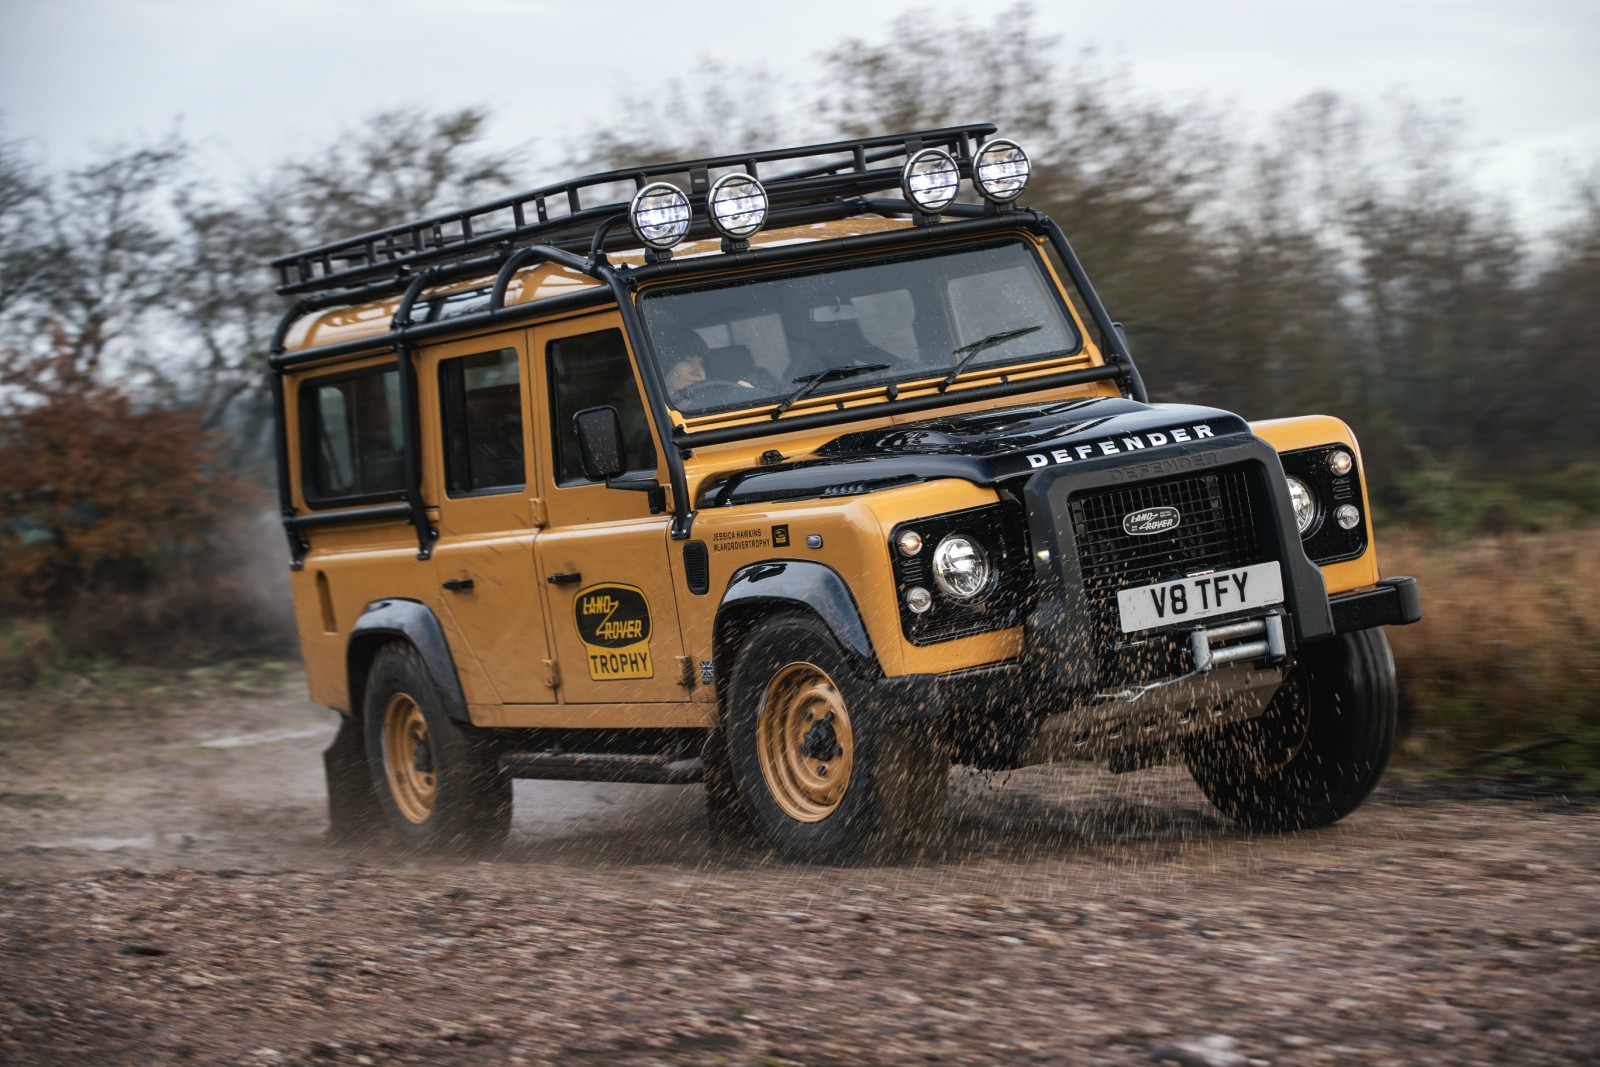 Land Rover organizza un nuovo “Trophy” con le Defender Works V8 appositamente costruite e allestite